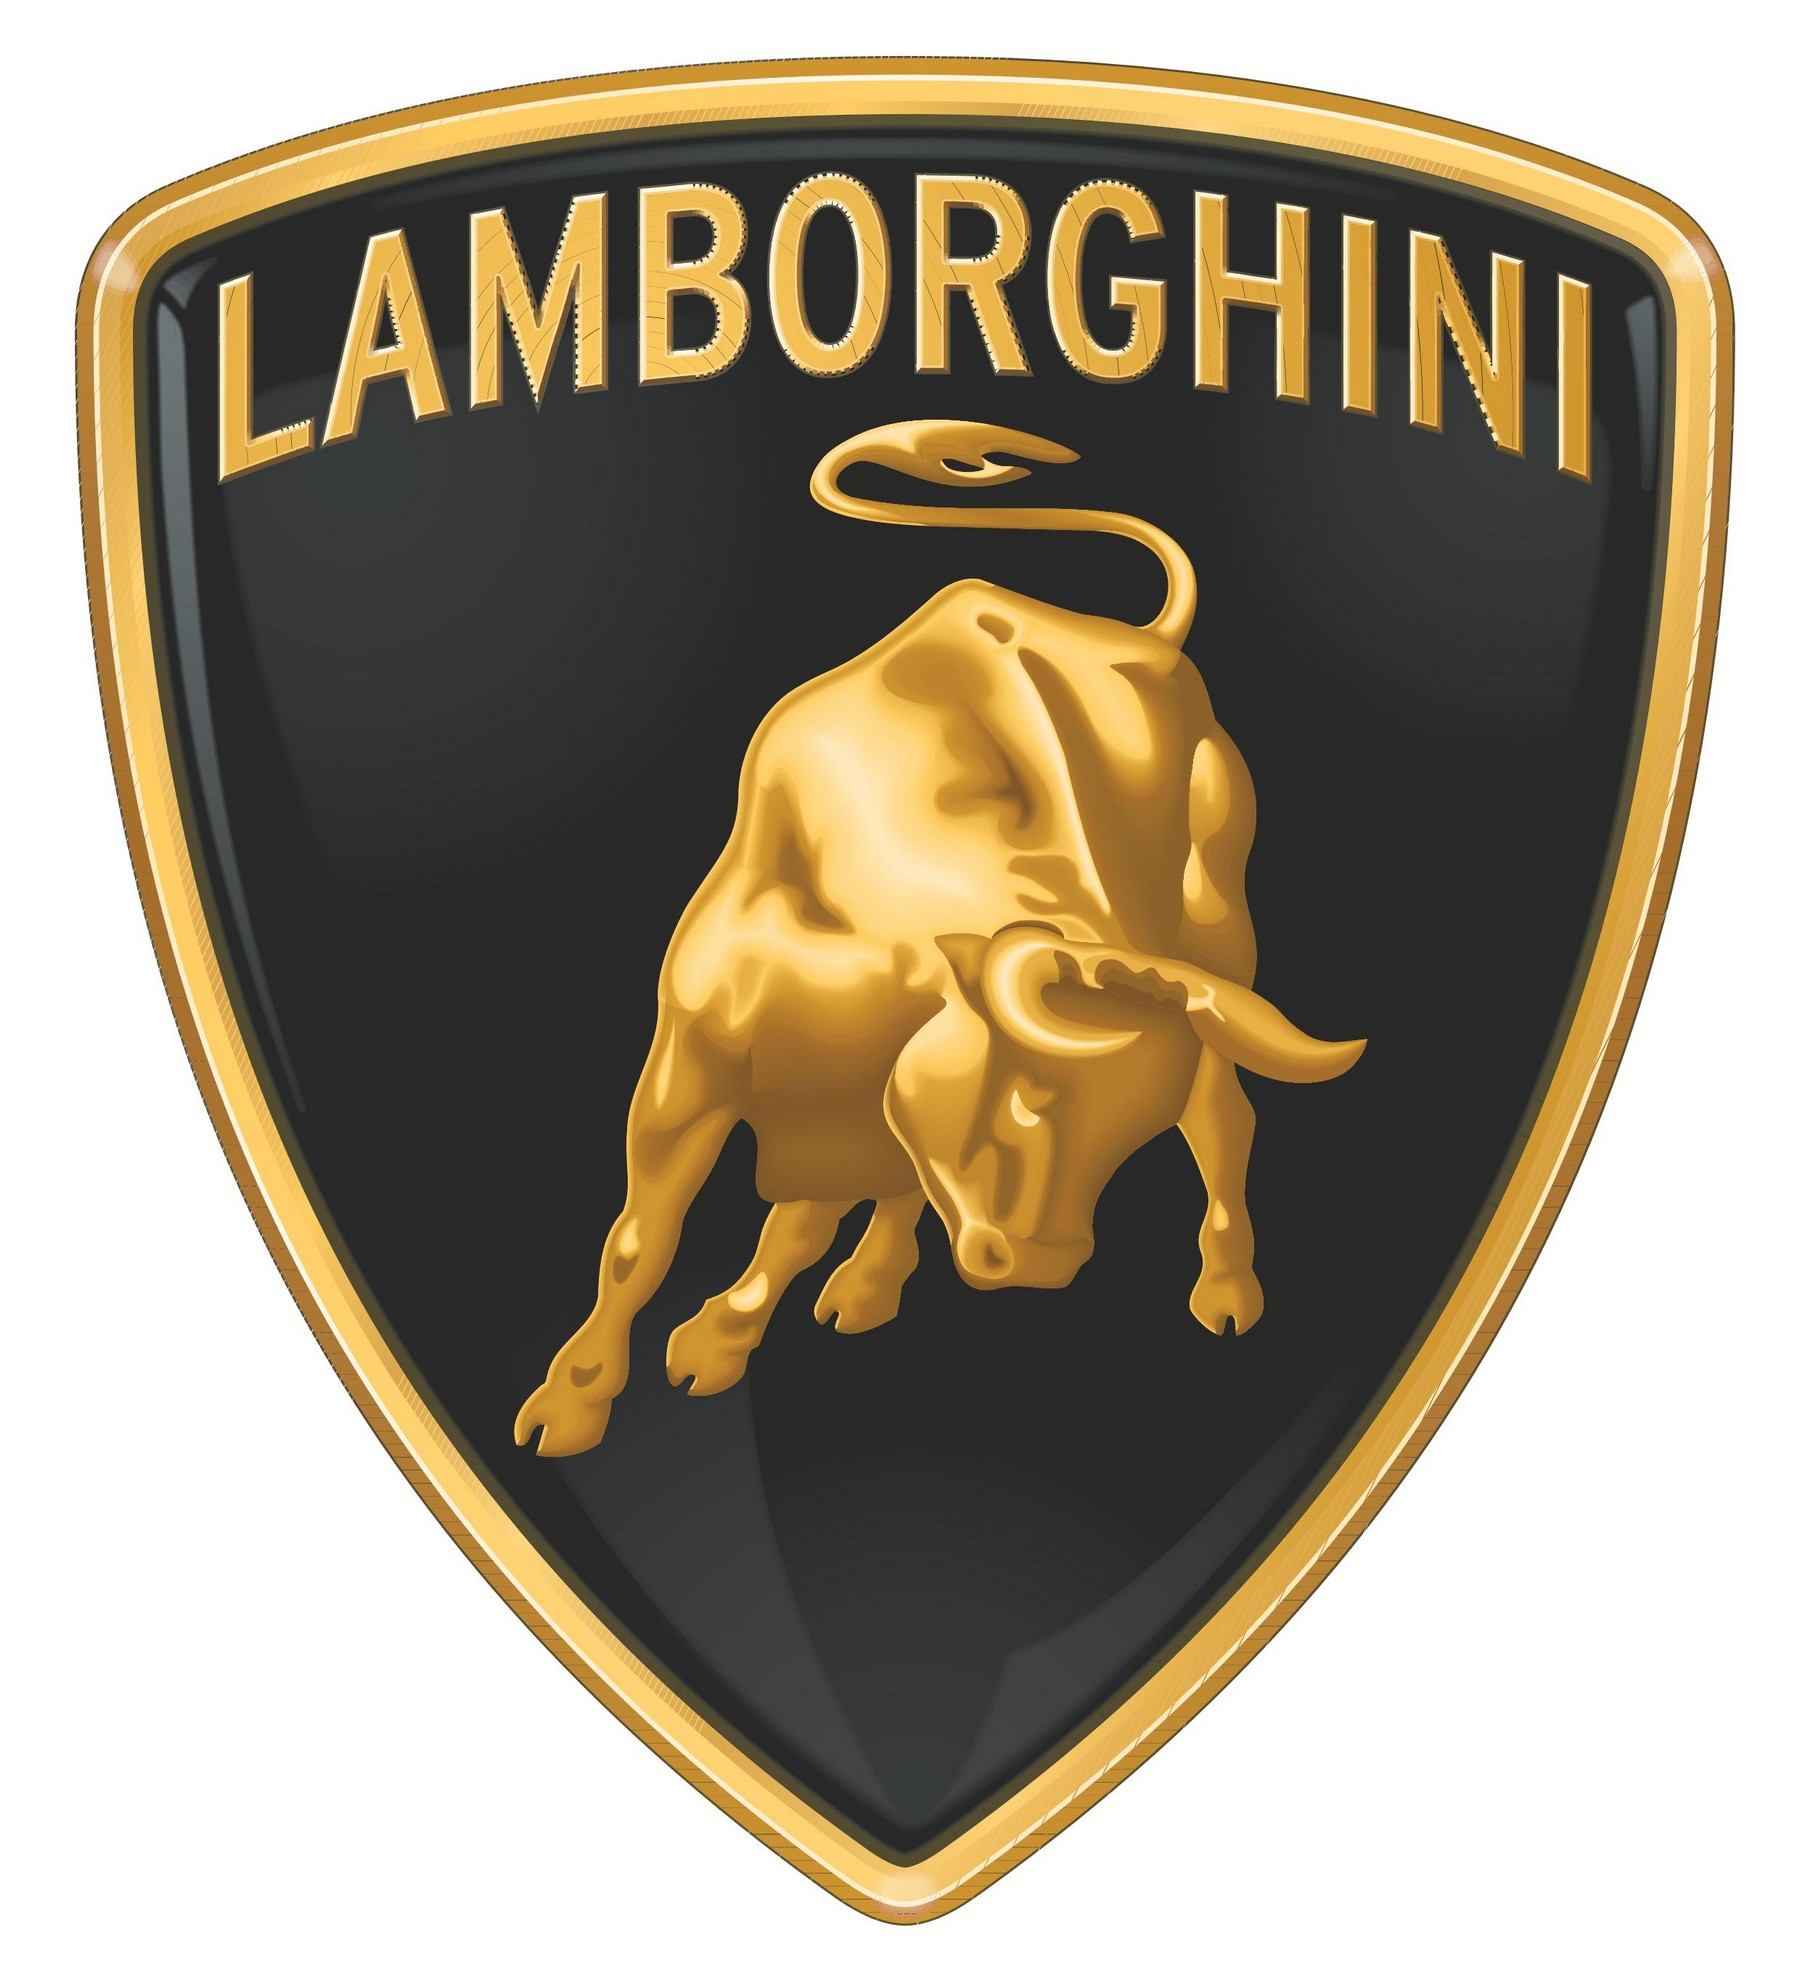 lamborghini лого вектор